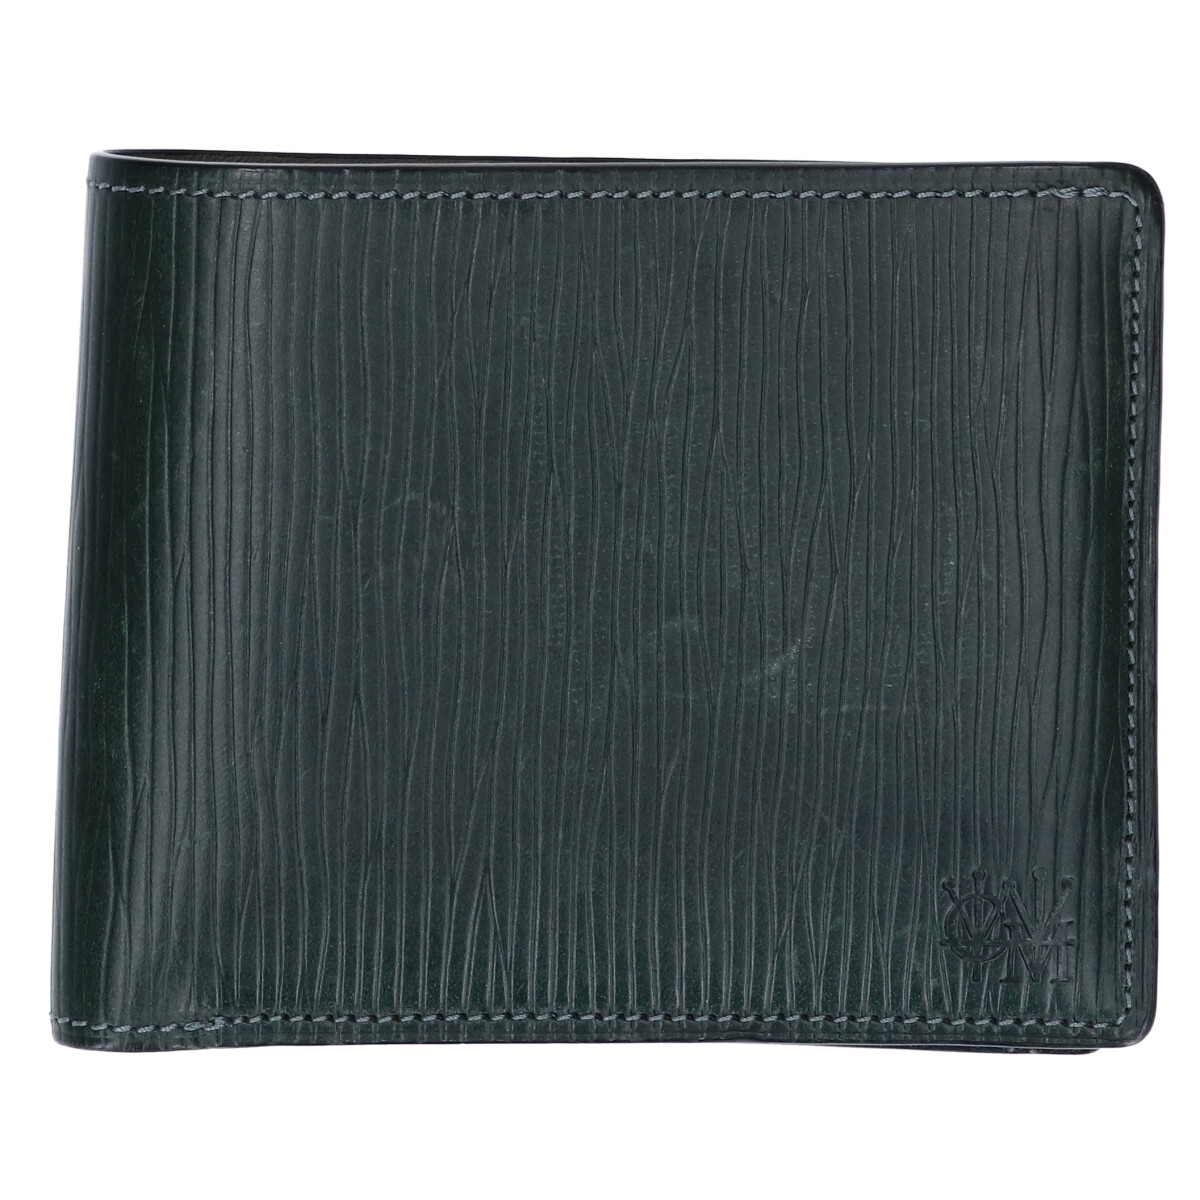 ココマイスターの45014265 グリーンテリトリー ジョリーロジャー バットビル ブライドルレザー 2つ折り財布の買取実績です。